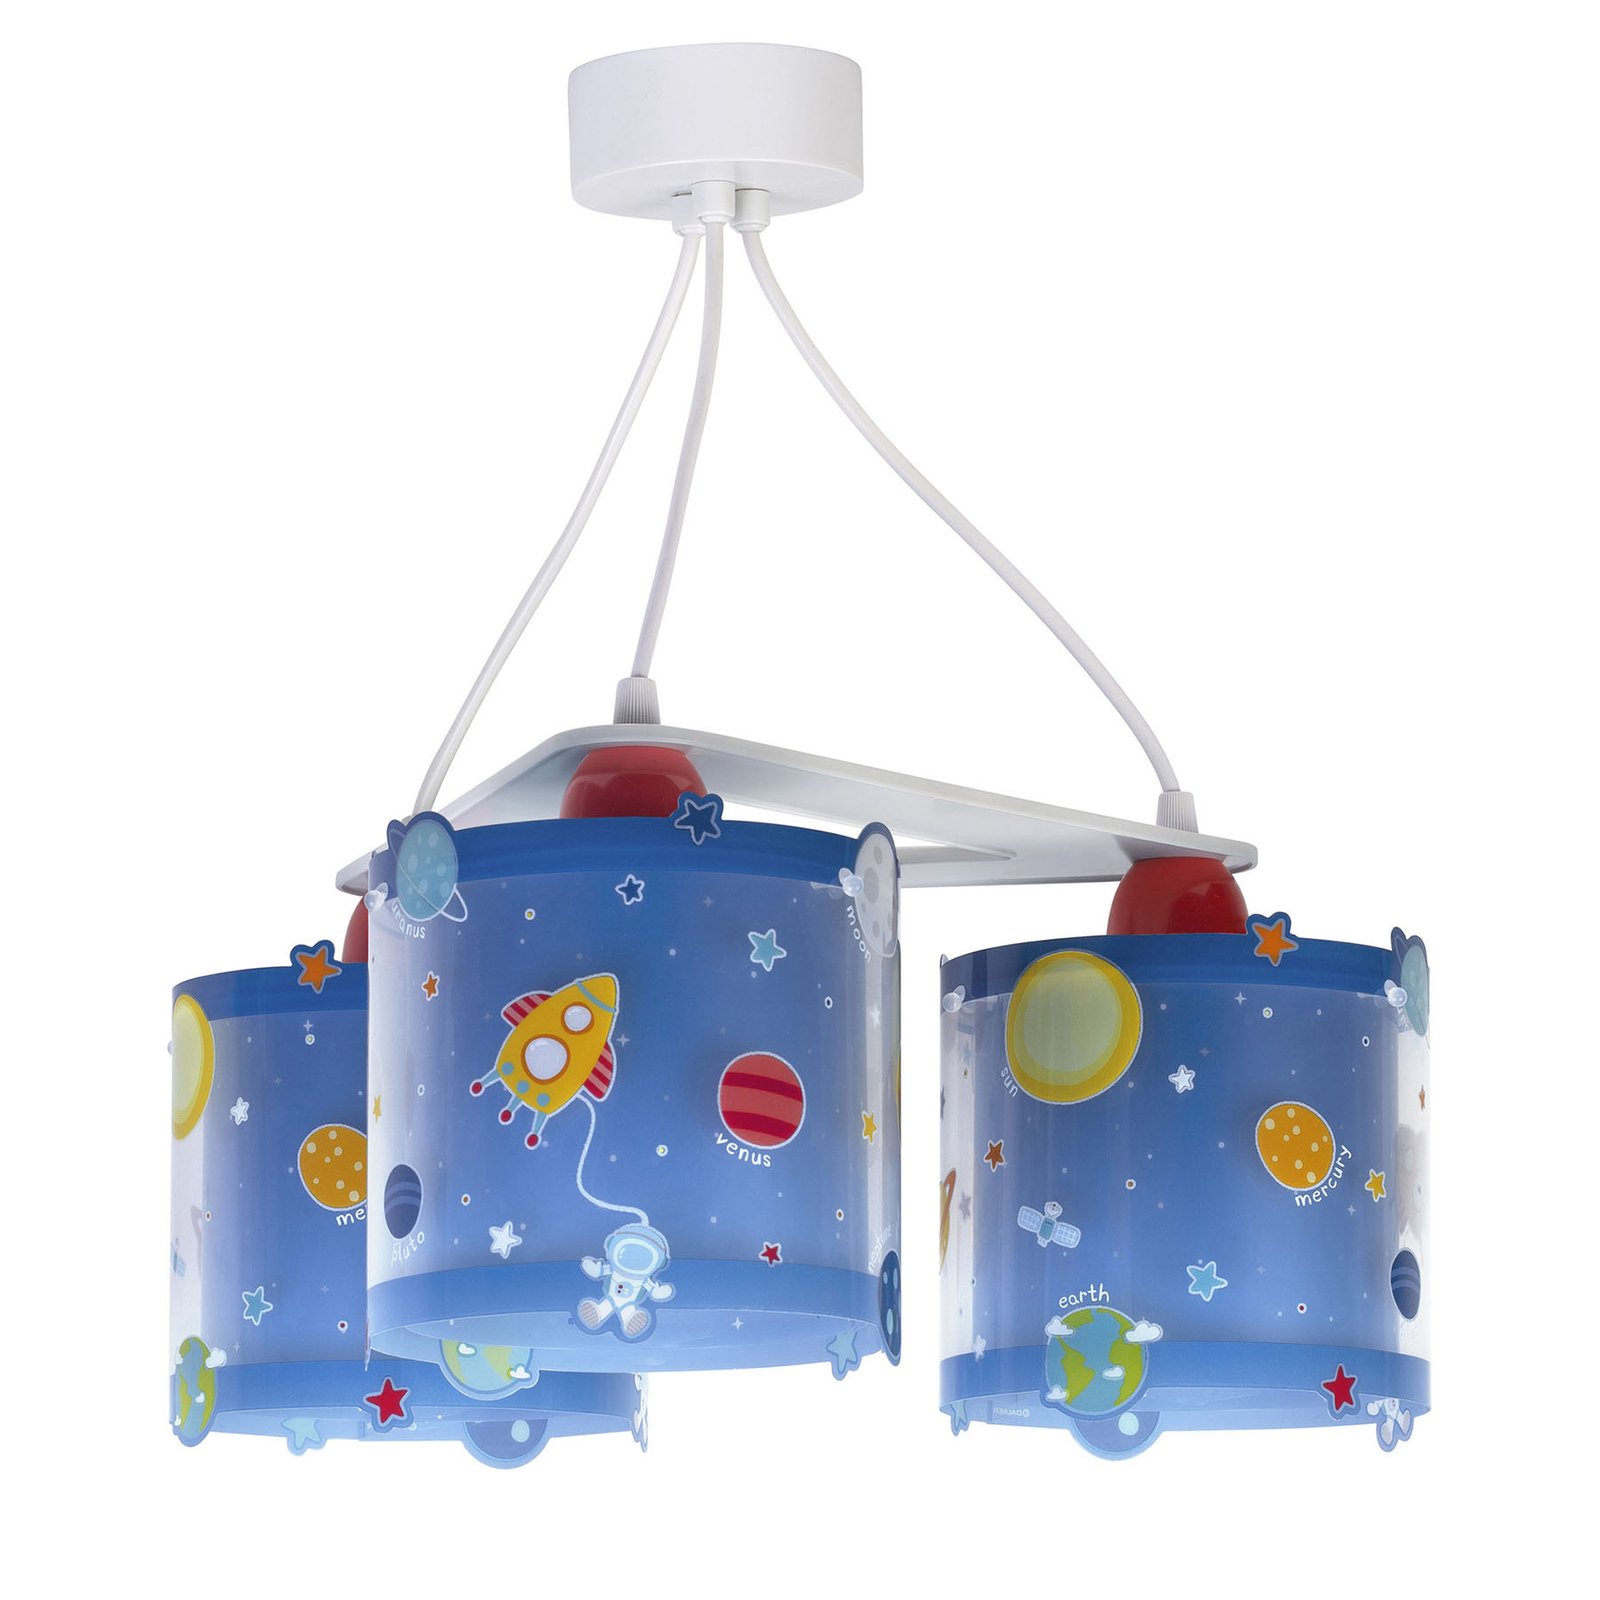 Lastenhuoneen riippuvalaisin Planets, 3-lamppuinen